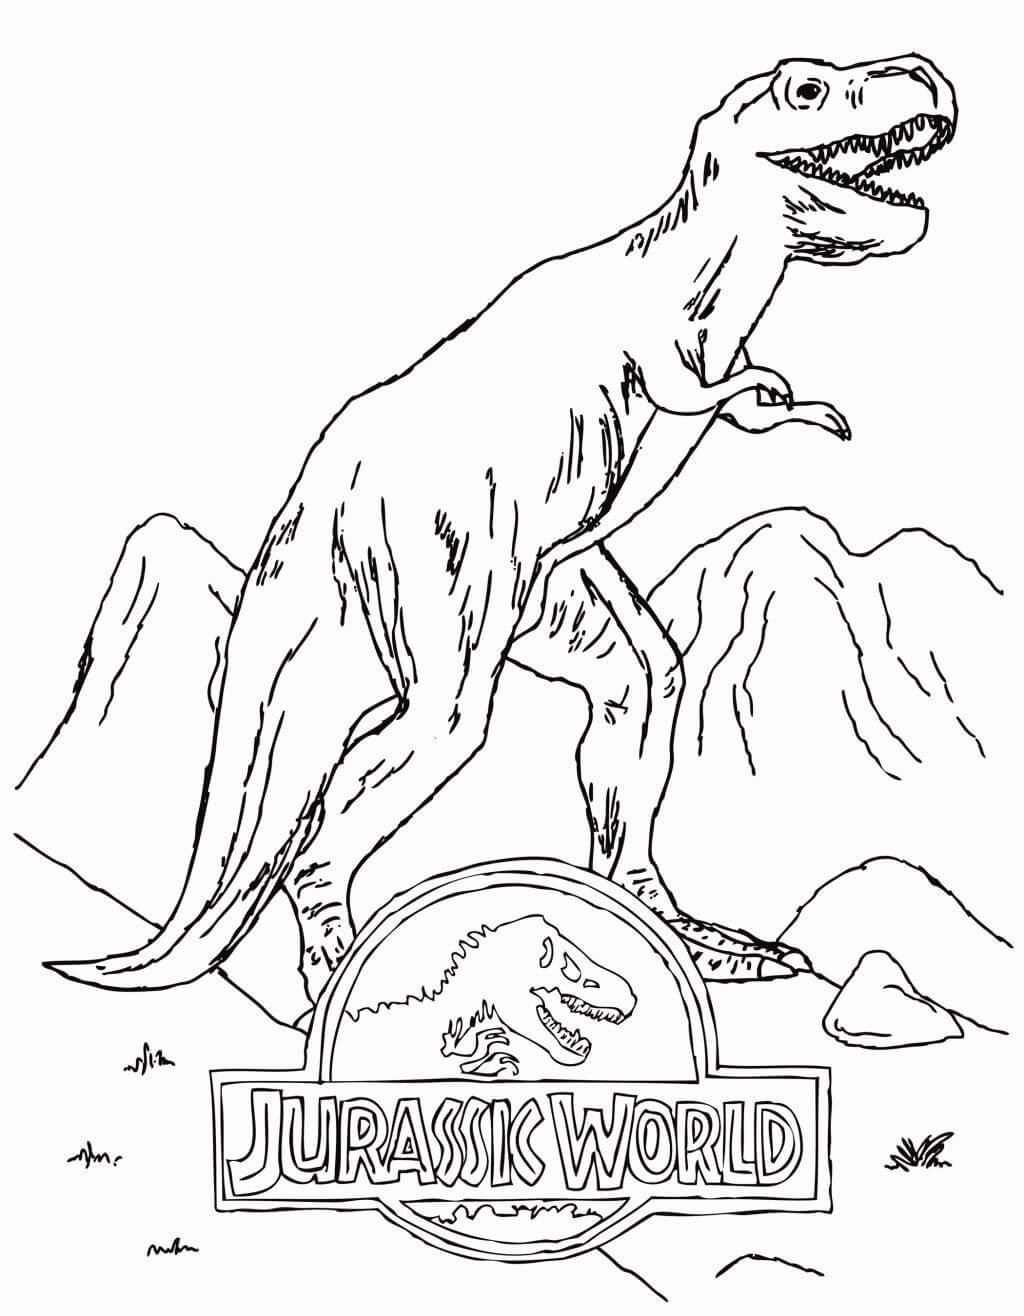 Dibujos de Logo Mundo Jurásico con T Rex para colorear